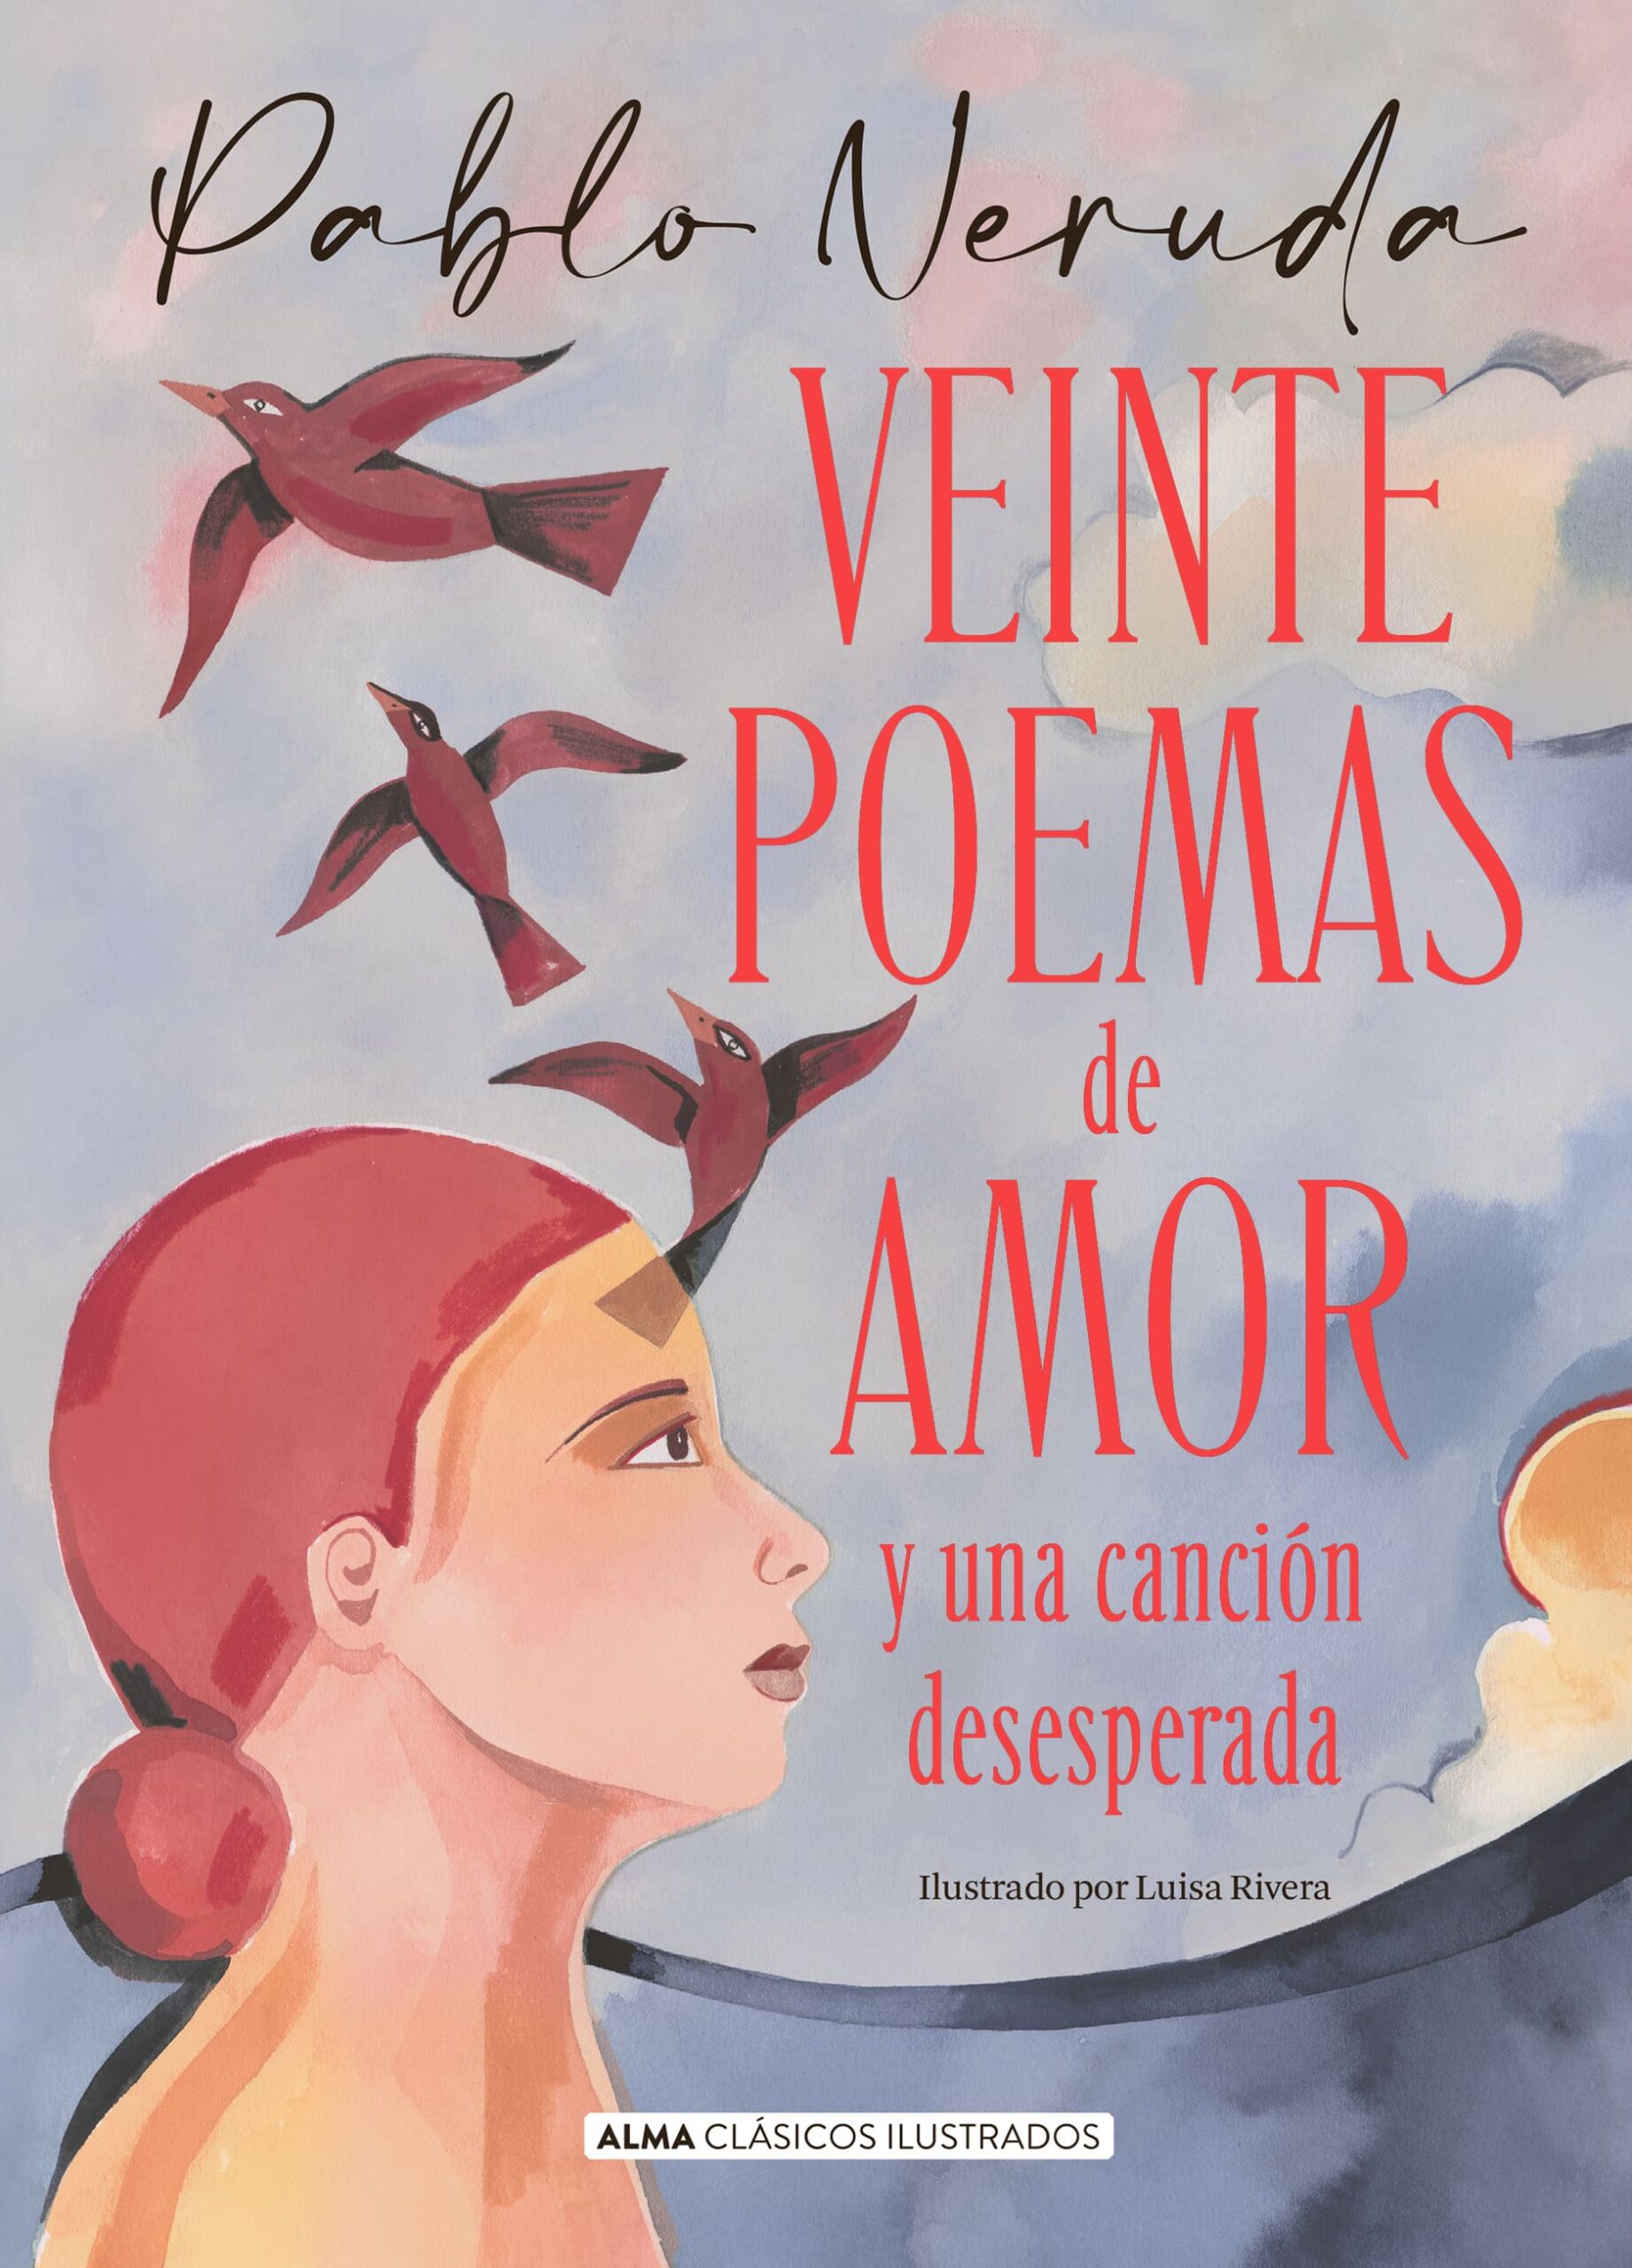 Descubre los mejores libros de poemas de amor en formato PDF